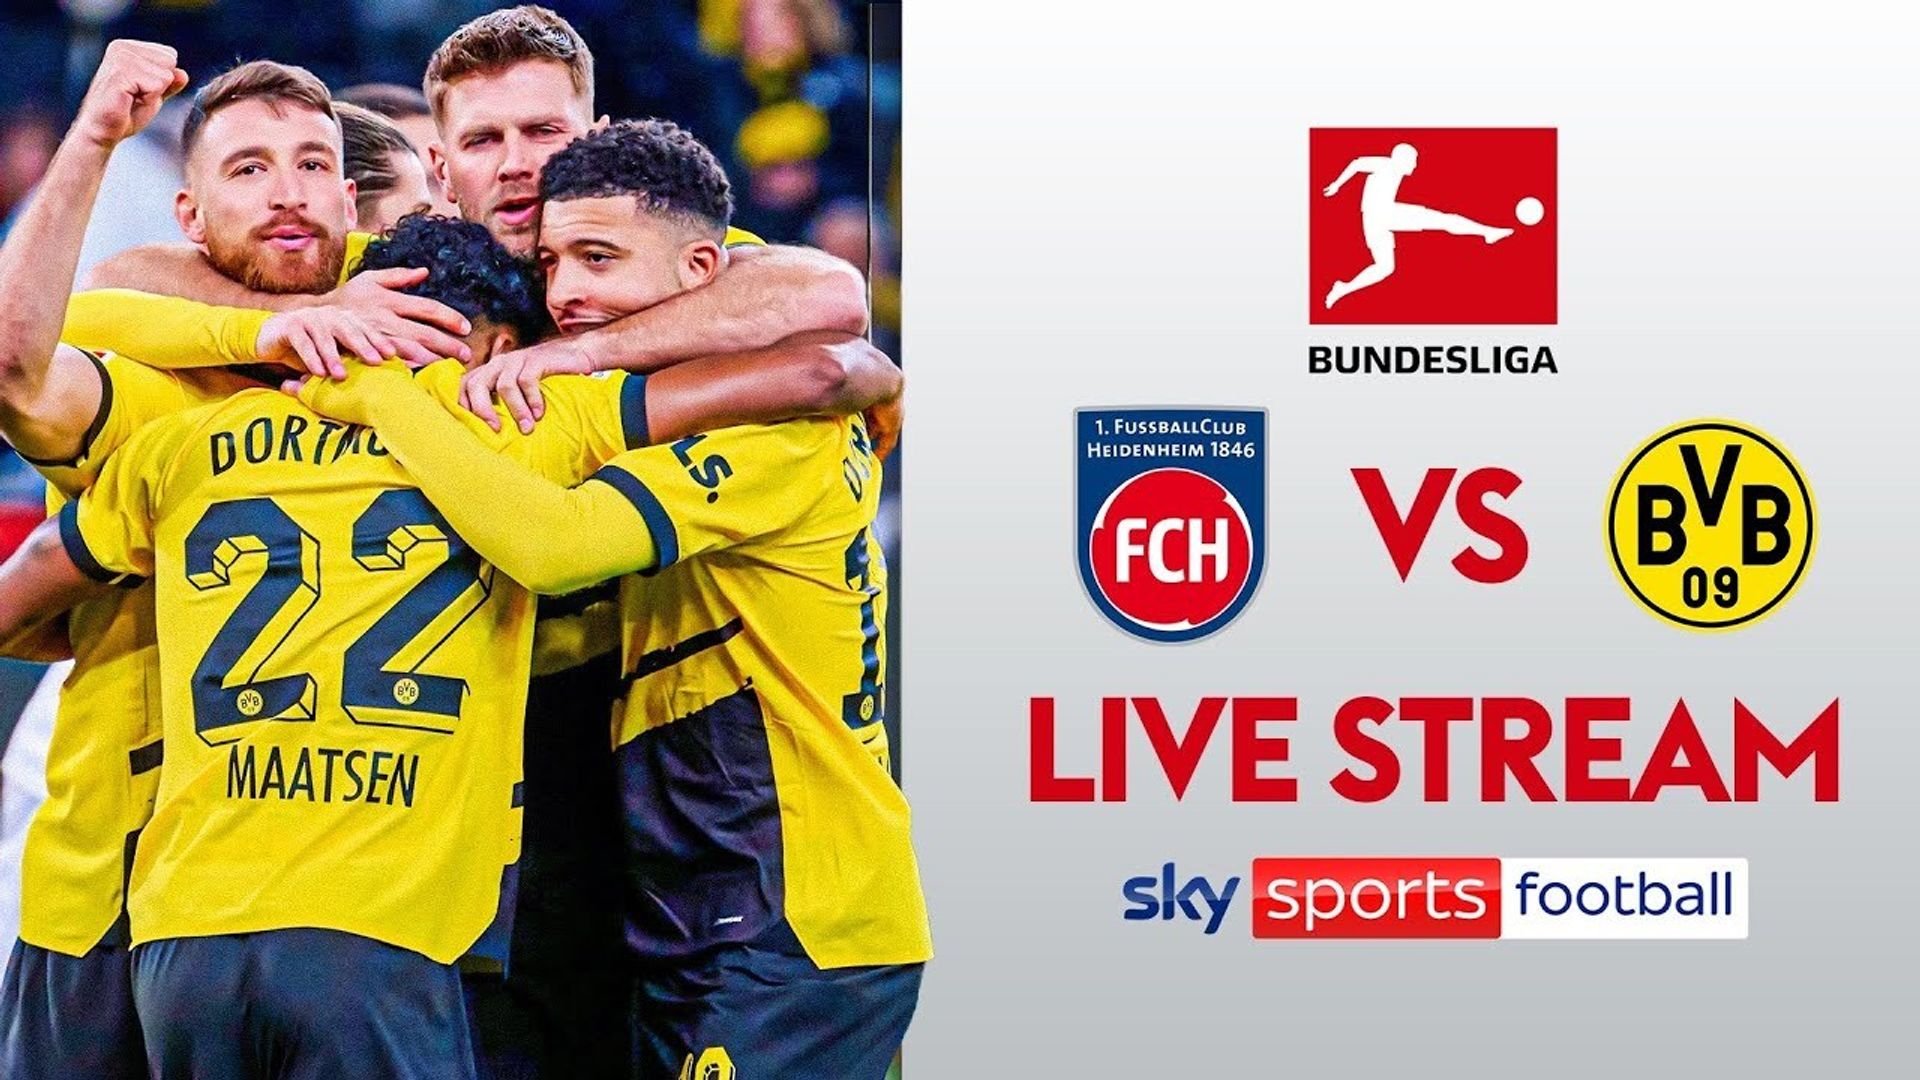 FREE STREAM: Watch Dortmund face Heidenheim in Bundesliga at 7.20pm